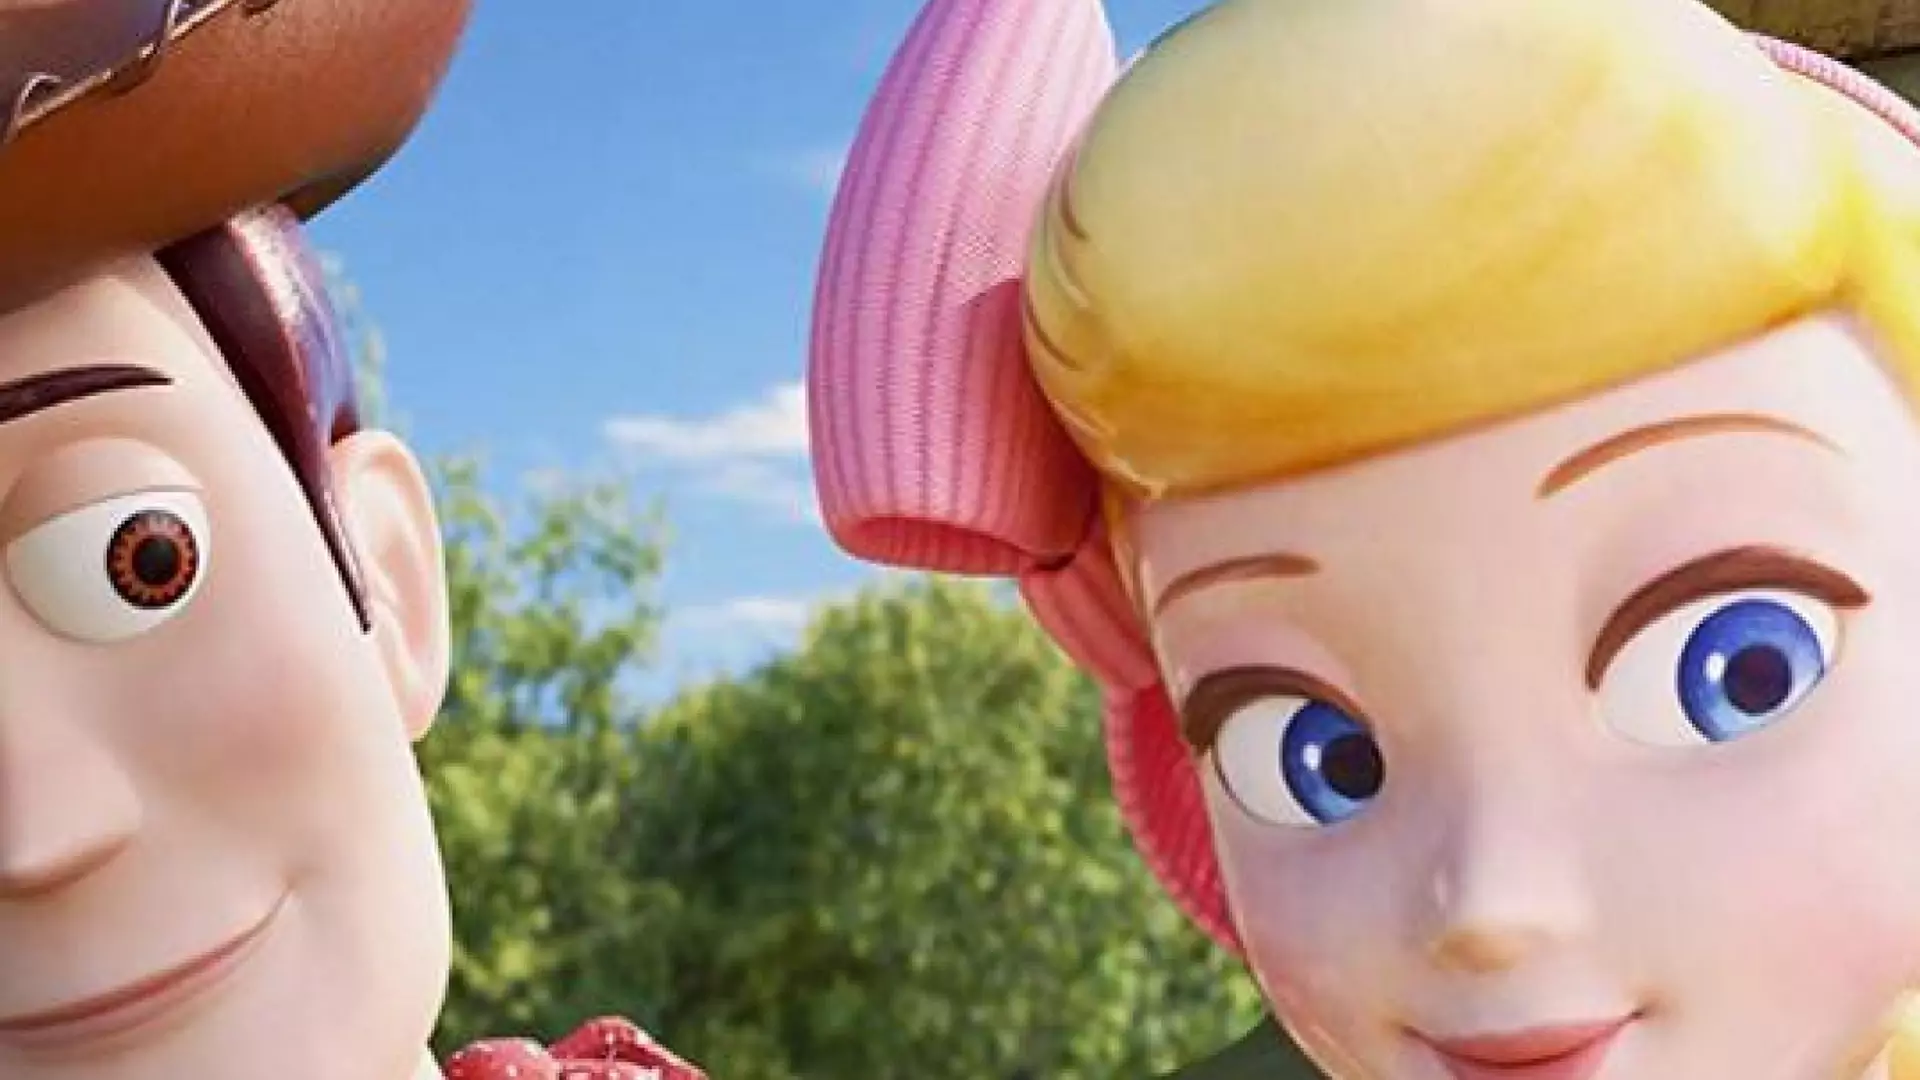 Konserwatyści zarzucają "Toy Story 4" promowanie LGBT+. Wszystko przez jedną scenę